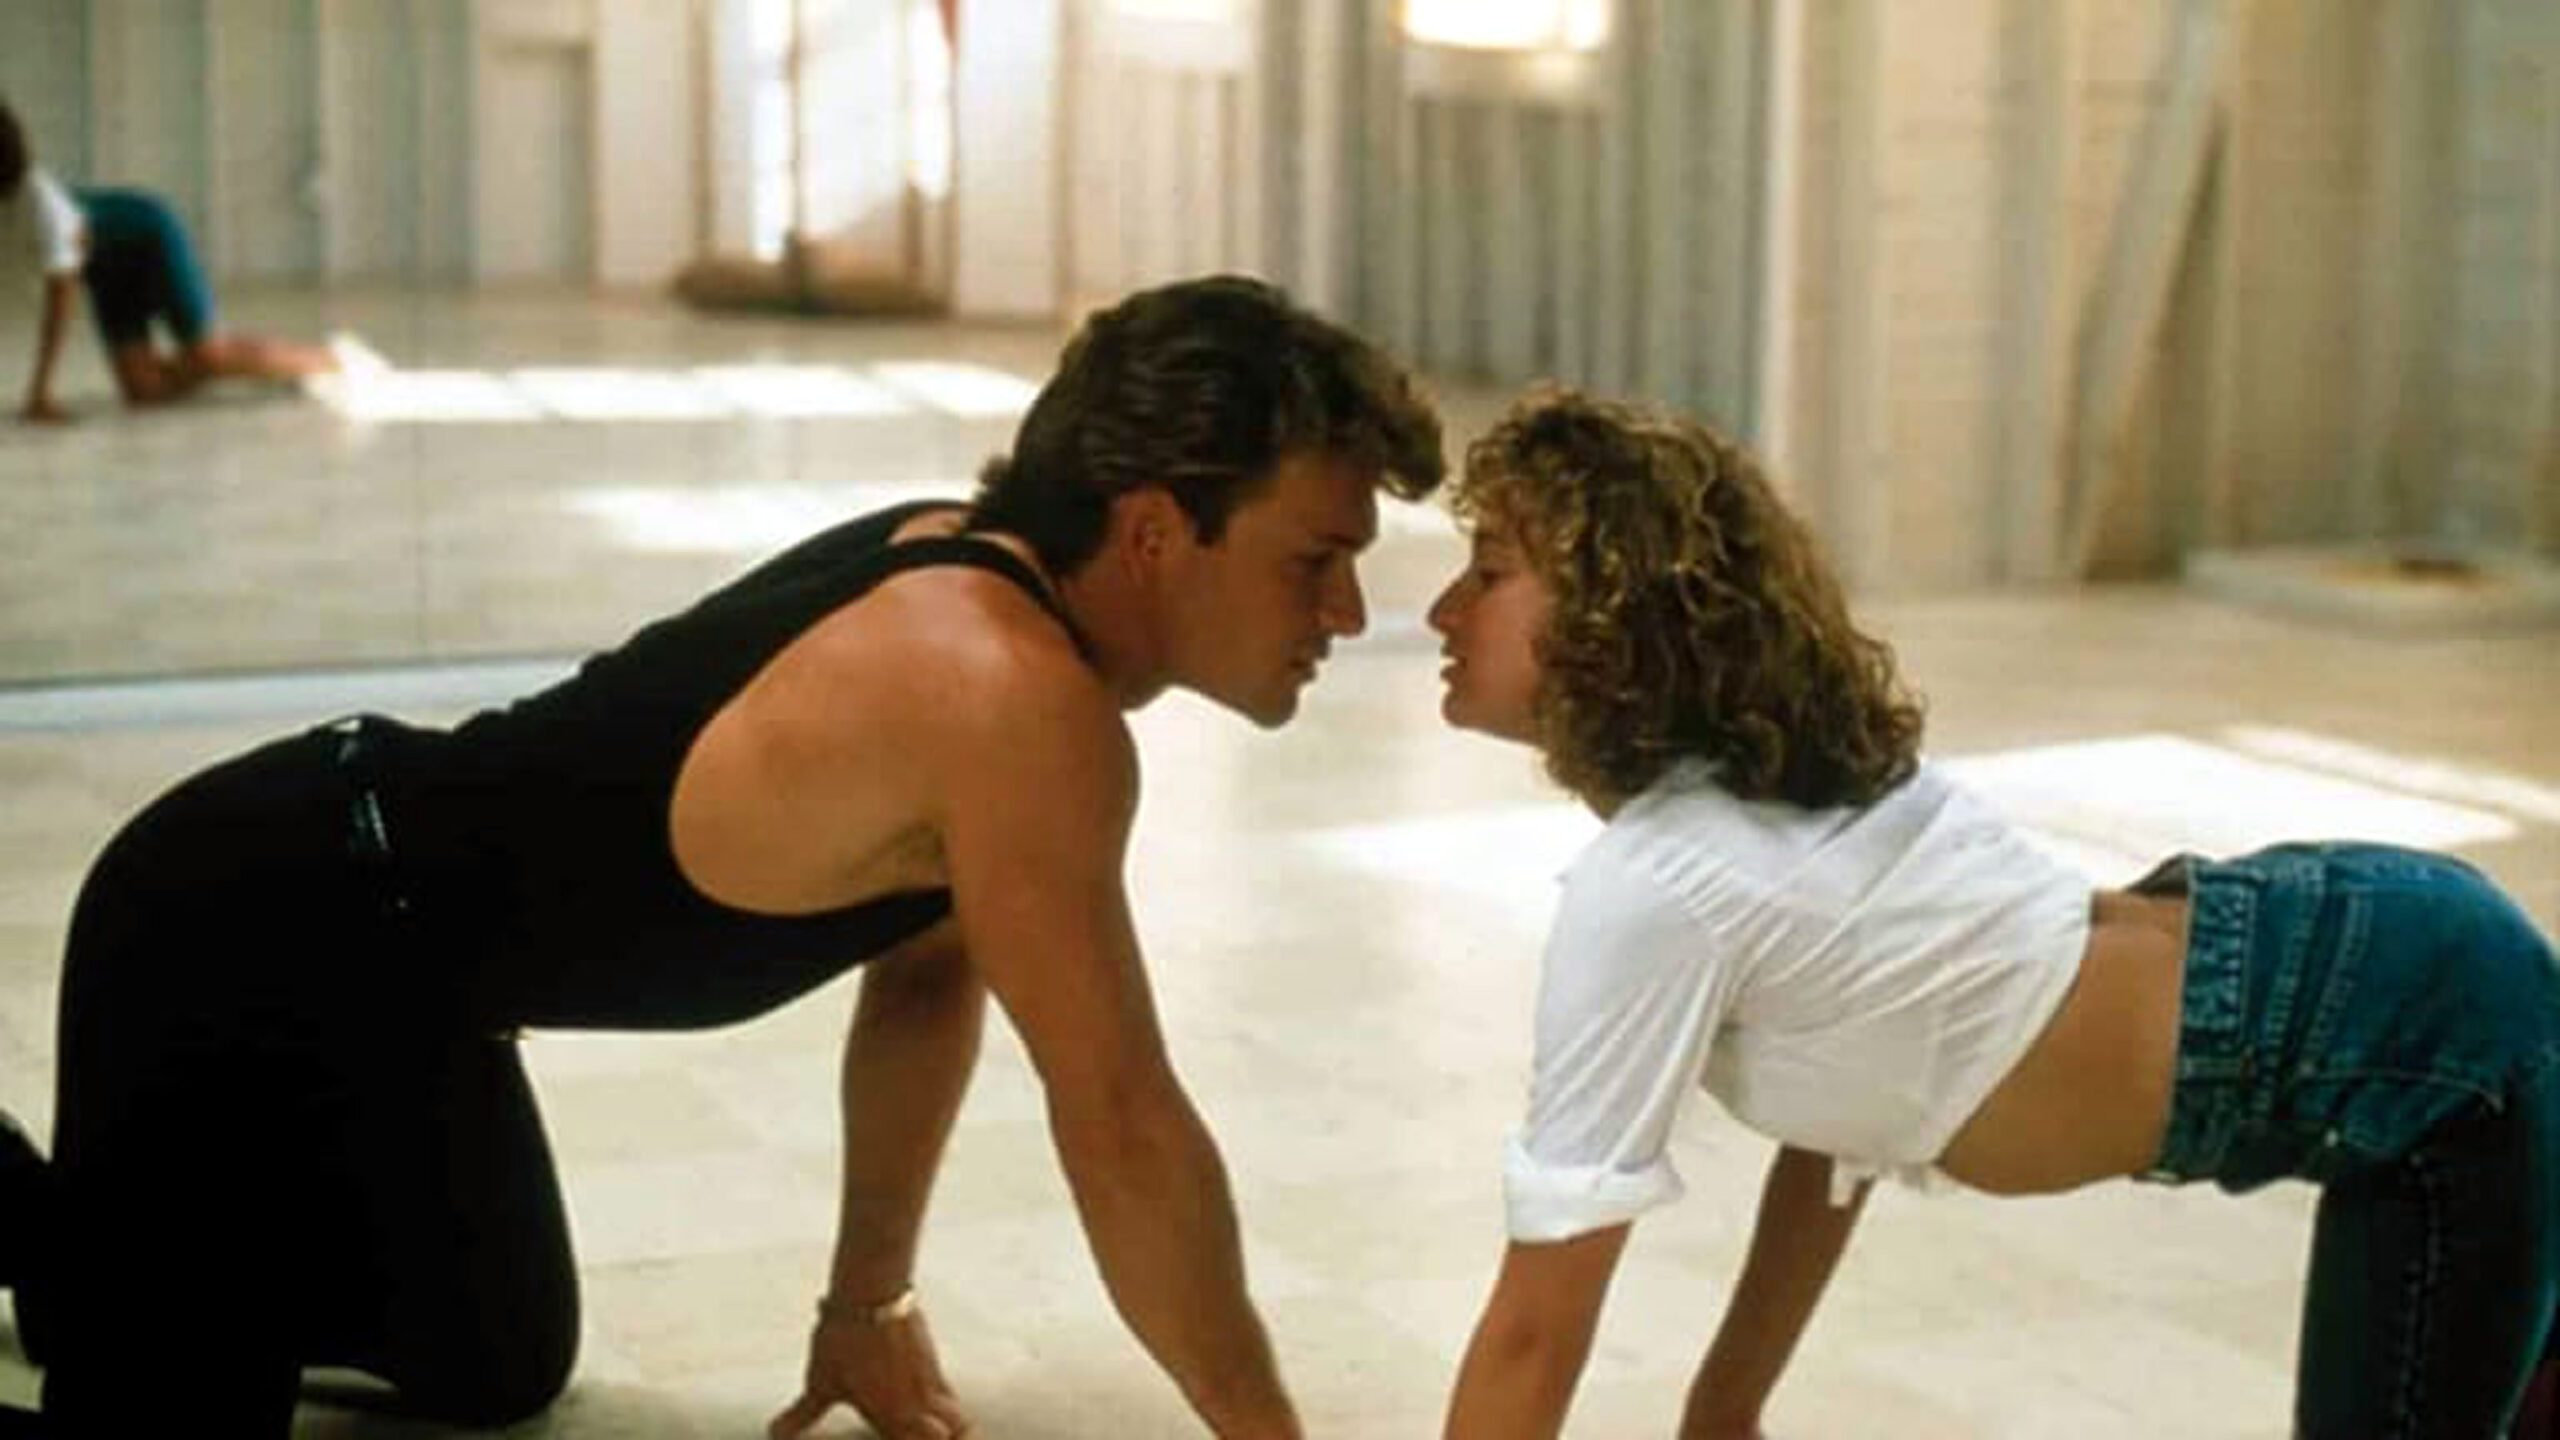 5 curiosità su Dirty Dancing, l’iconico film uscito nel 1987 con protagonisti Patrick Swayze e Jennifer Grey in dirty dancing